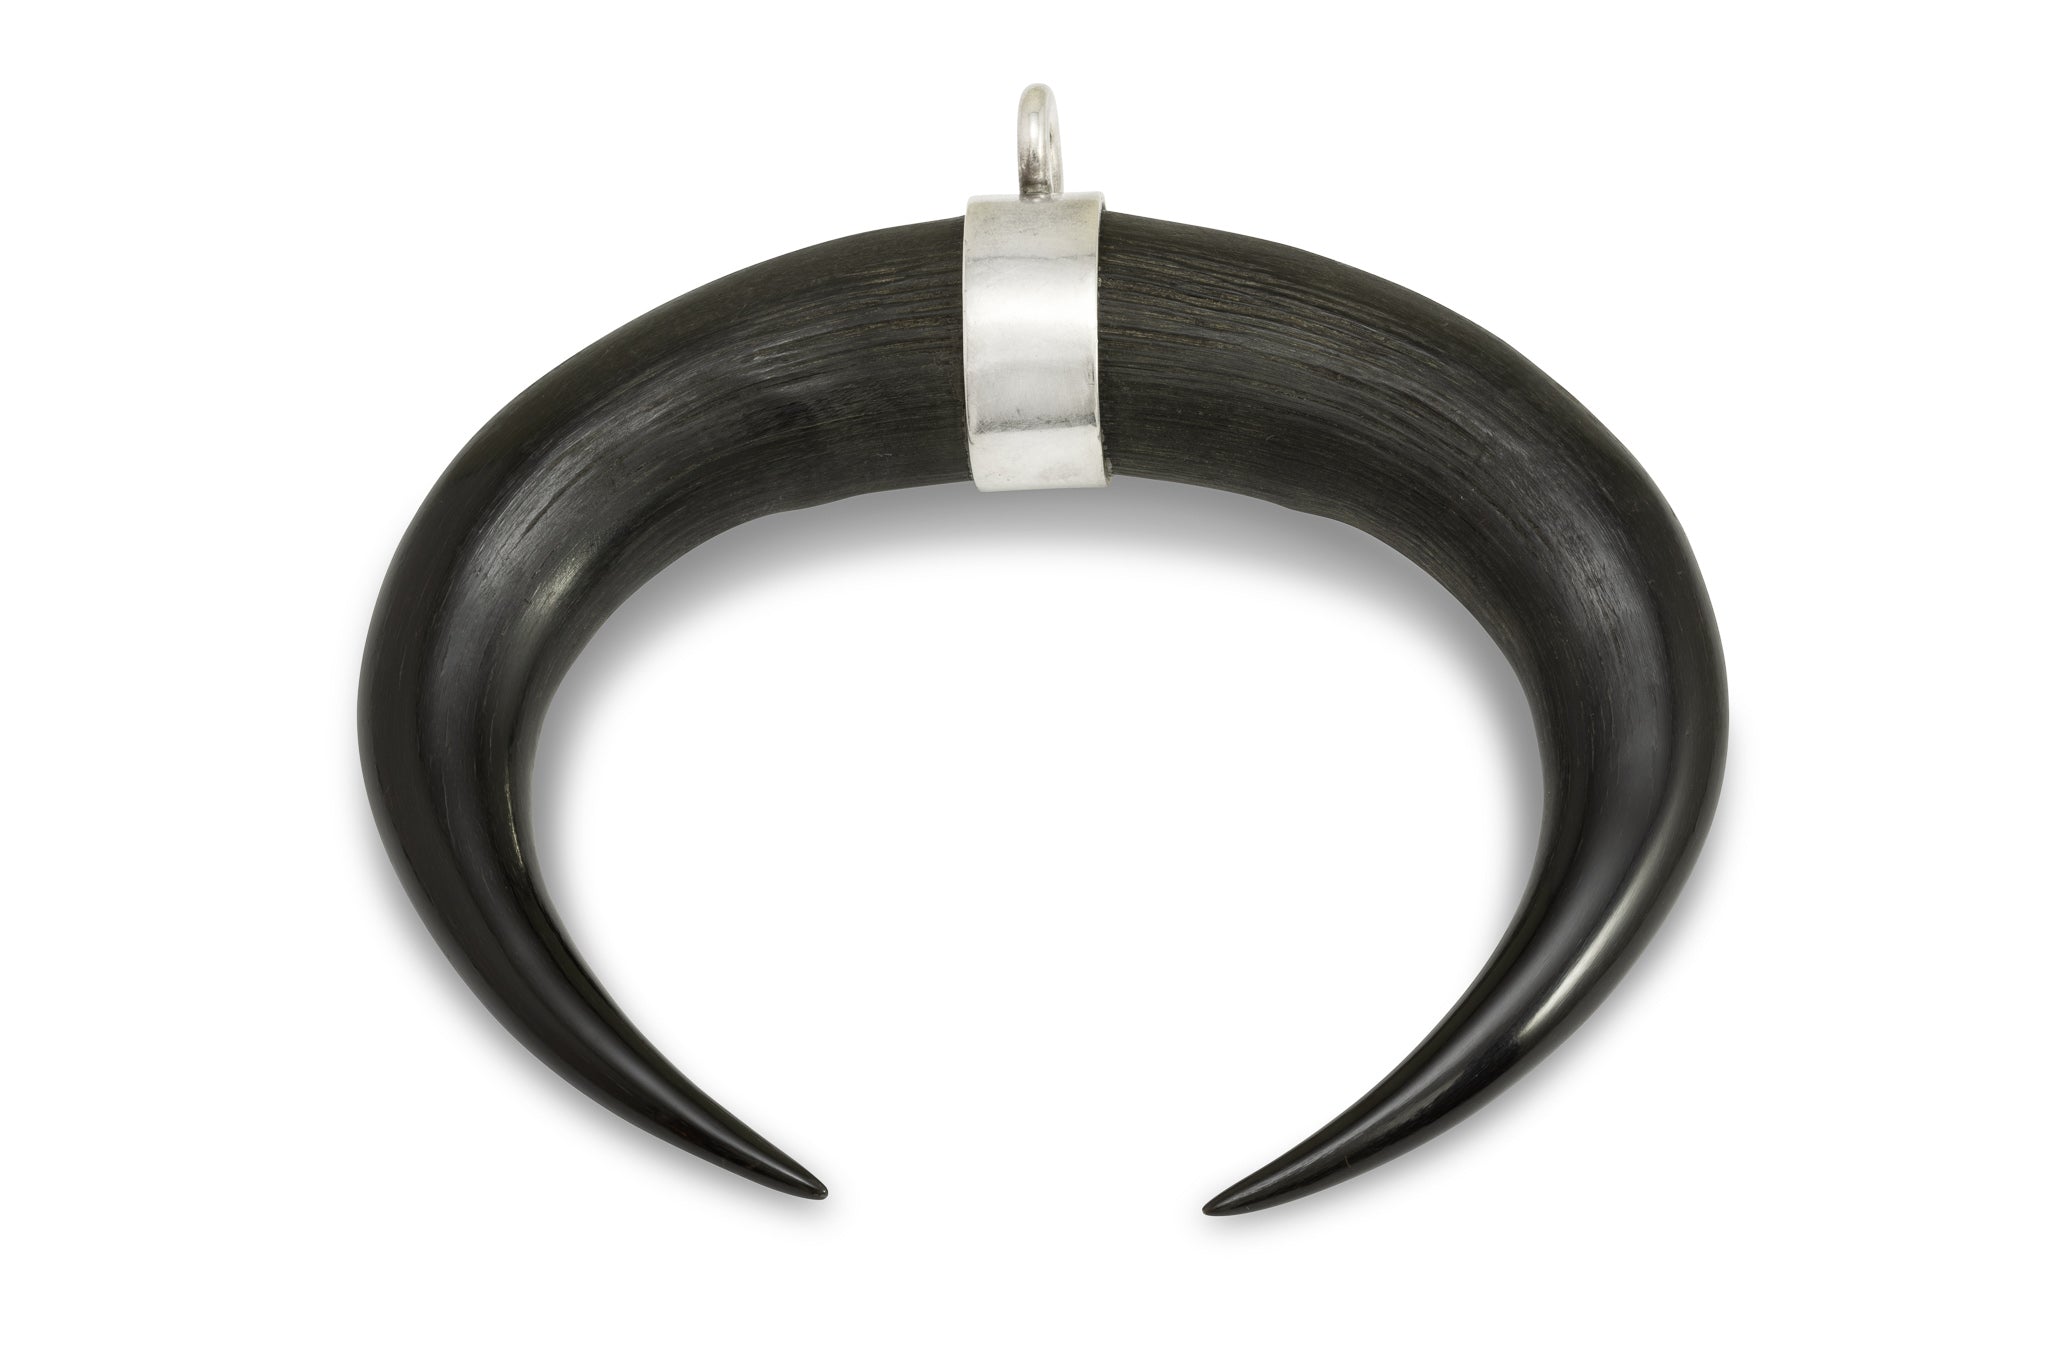 Die zwei polierten Spitzen von Gemshörnern, die durch ein Silberband zusammengehalten werden. Die Hörner formen ein Oval. Aufnahme von oben.